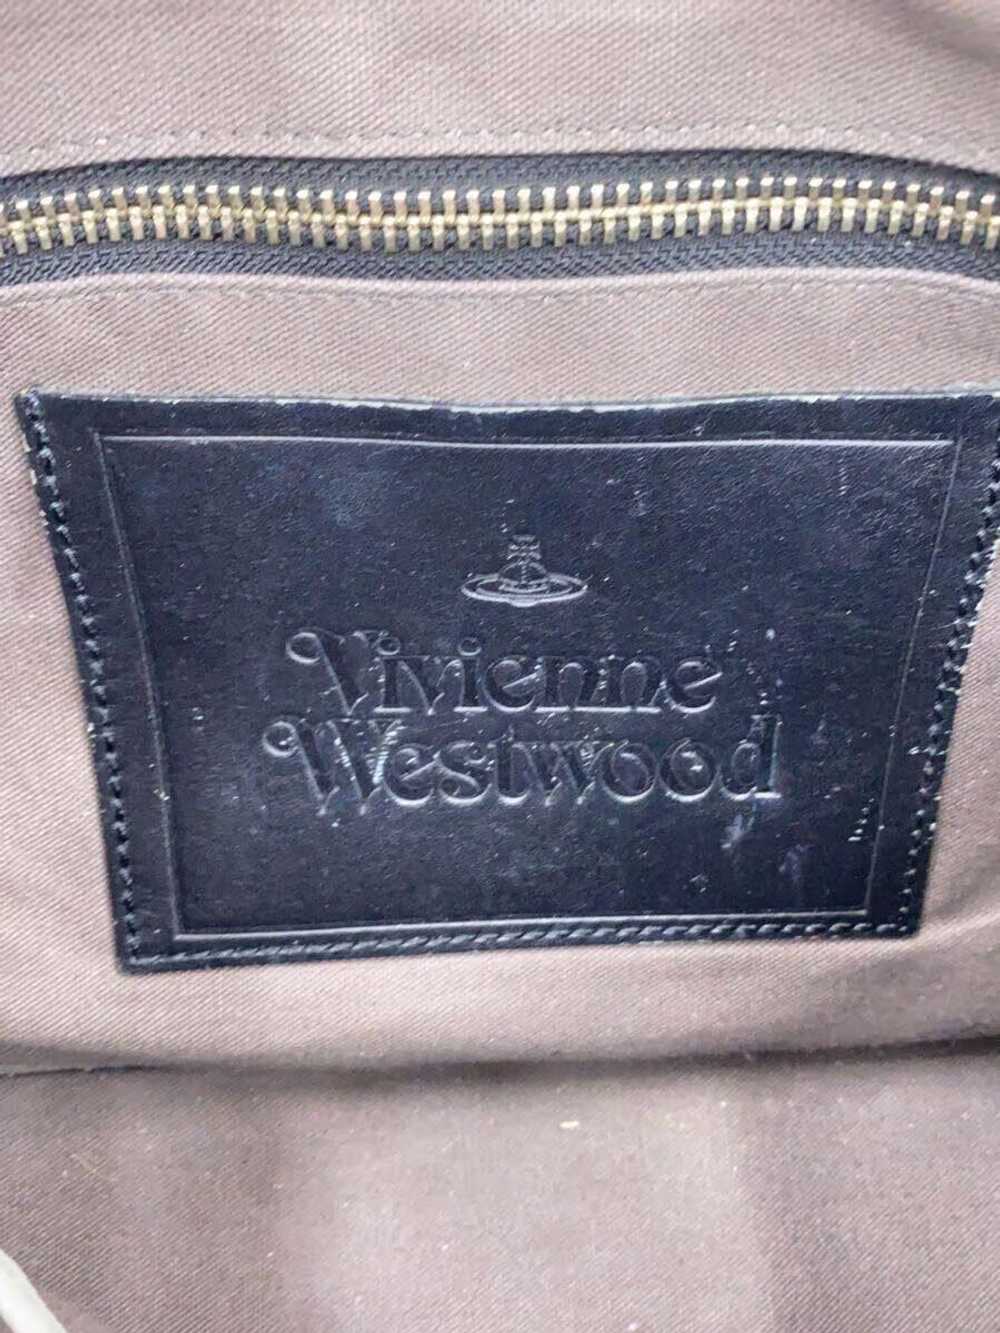 Vivienne Westwood Orb Logo Leather Shoulder Bag - image 5